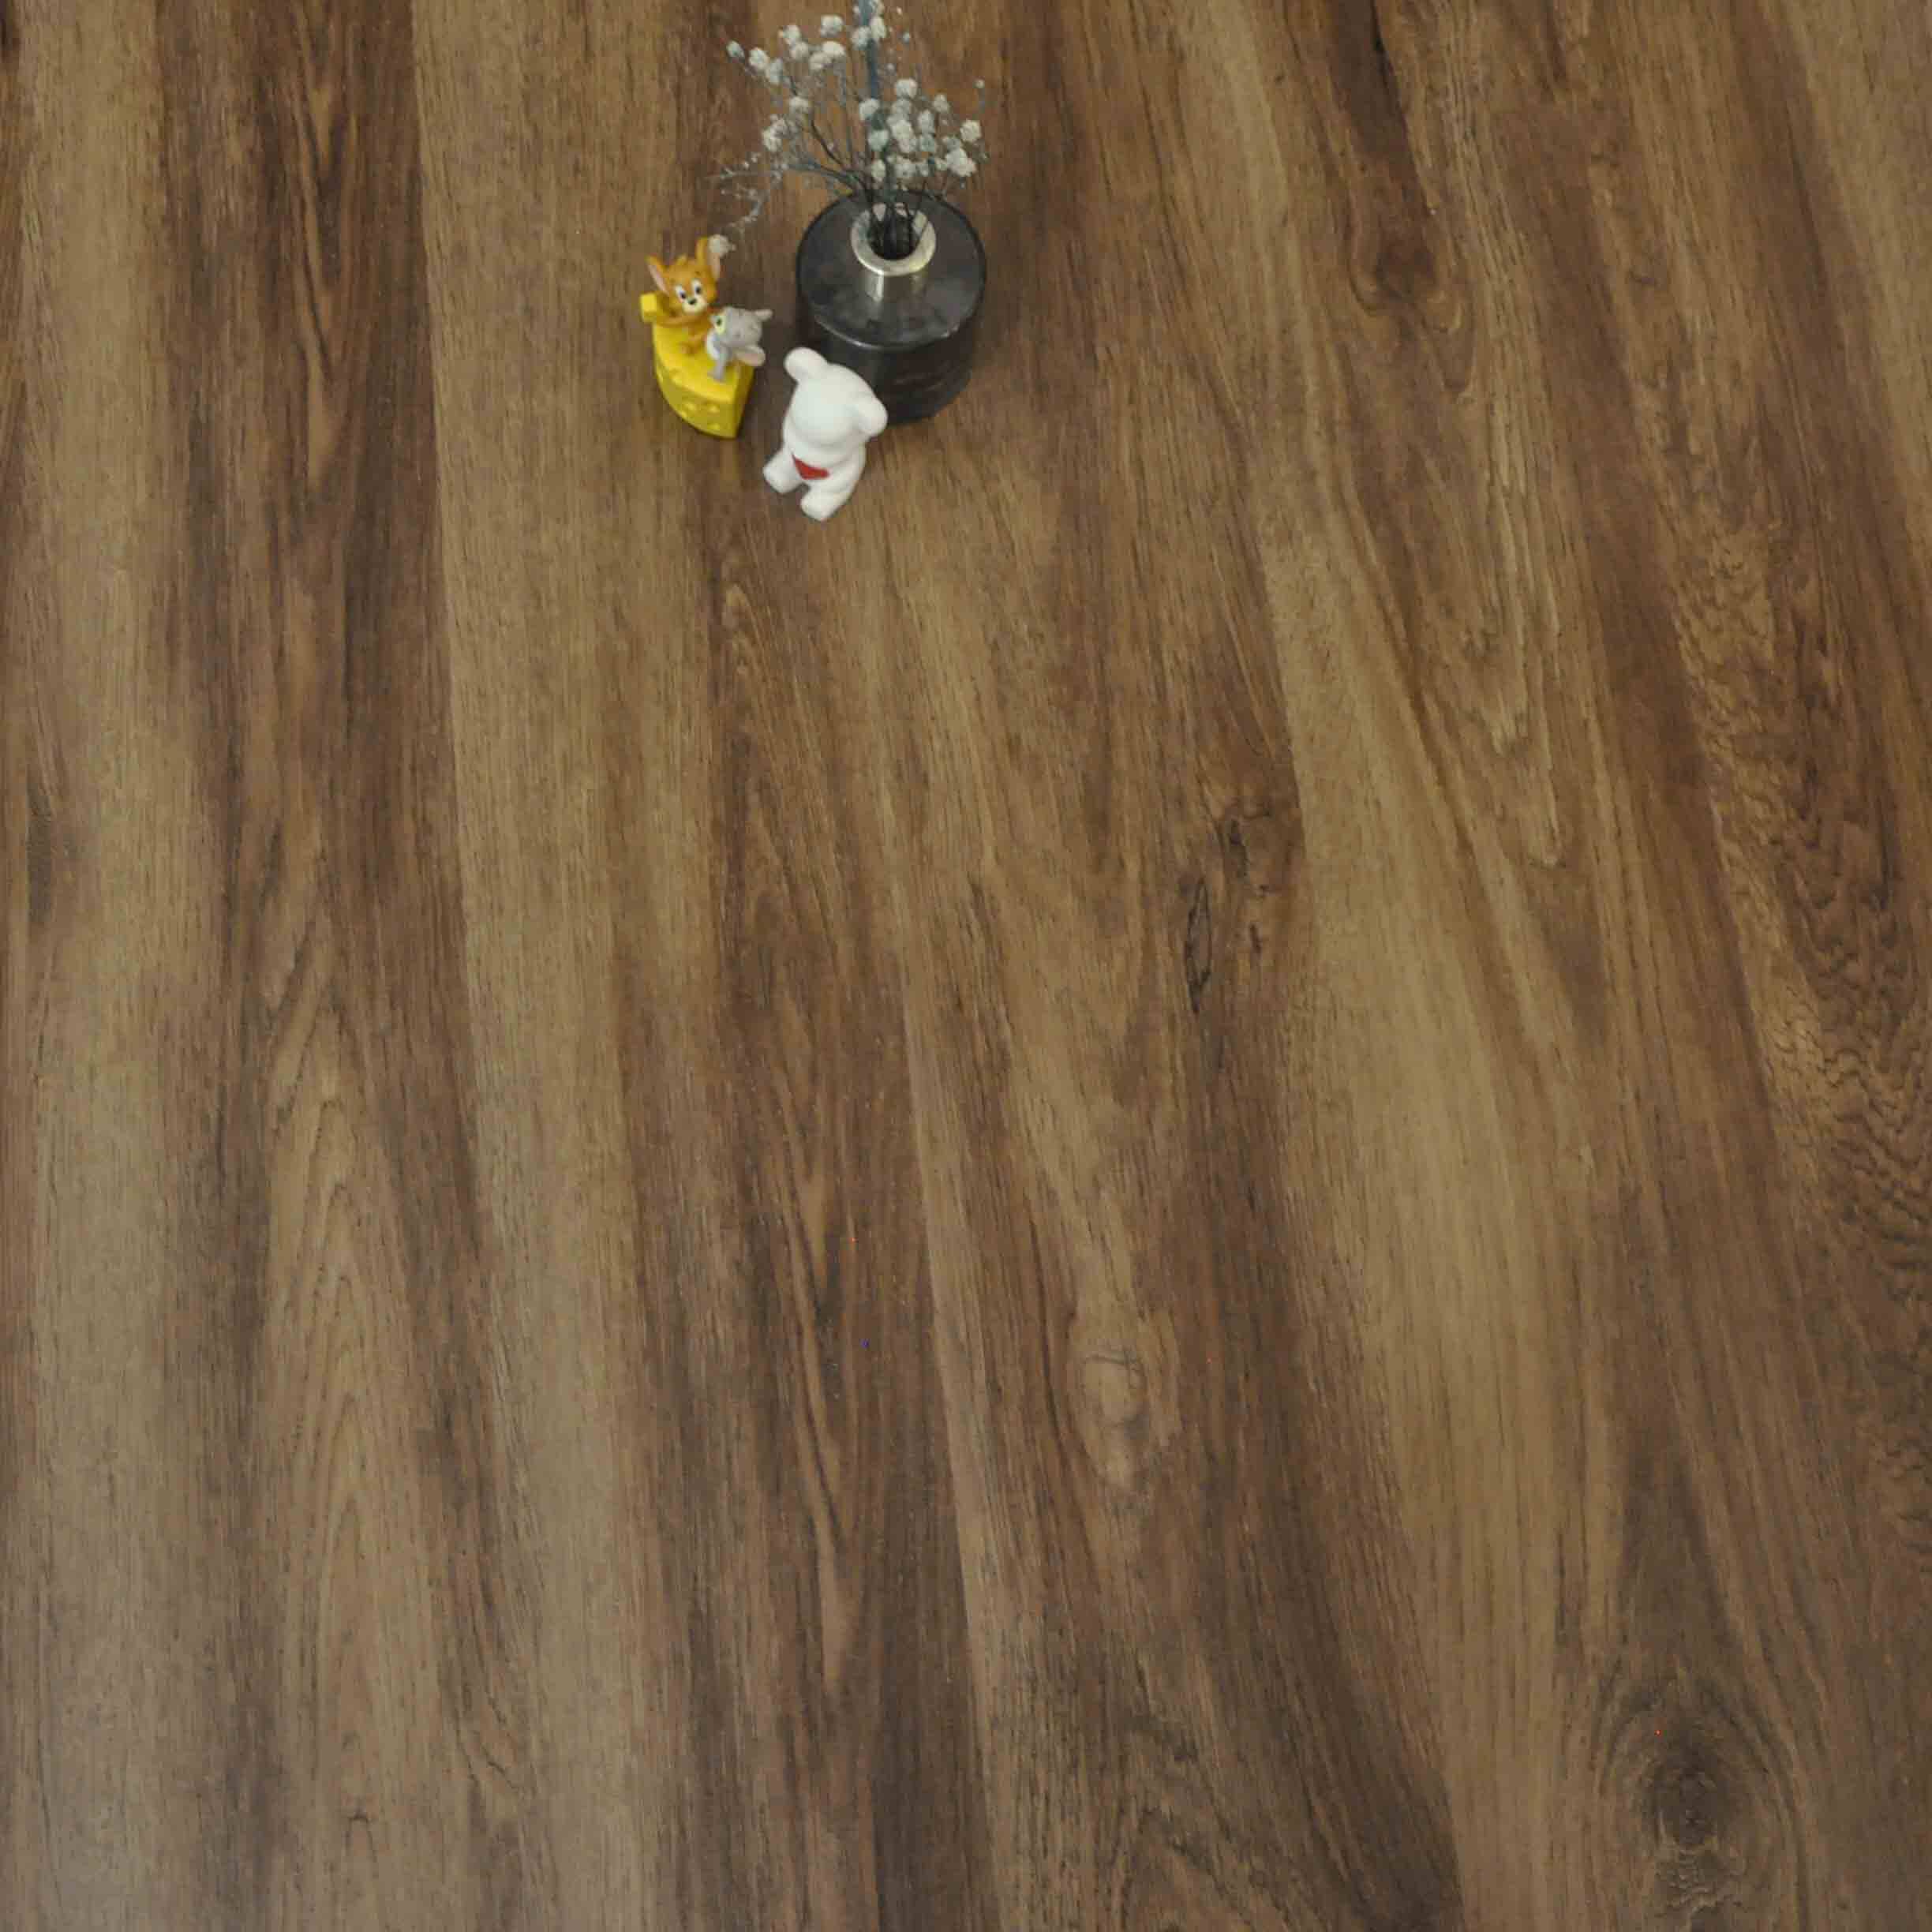 wholesale waterproof vinyl flooring suppliers, wholesale luxury waterproof vinyl flooring, wholesale waterproof vinyl plank flooring factory, china non-slip vinyl flooring, waterproof vinyl plank flooring manufacturers